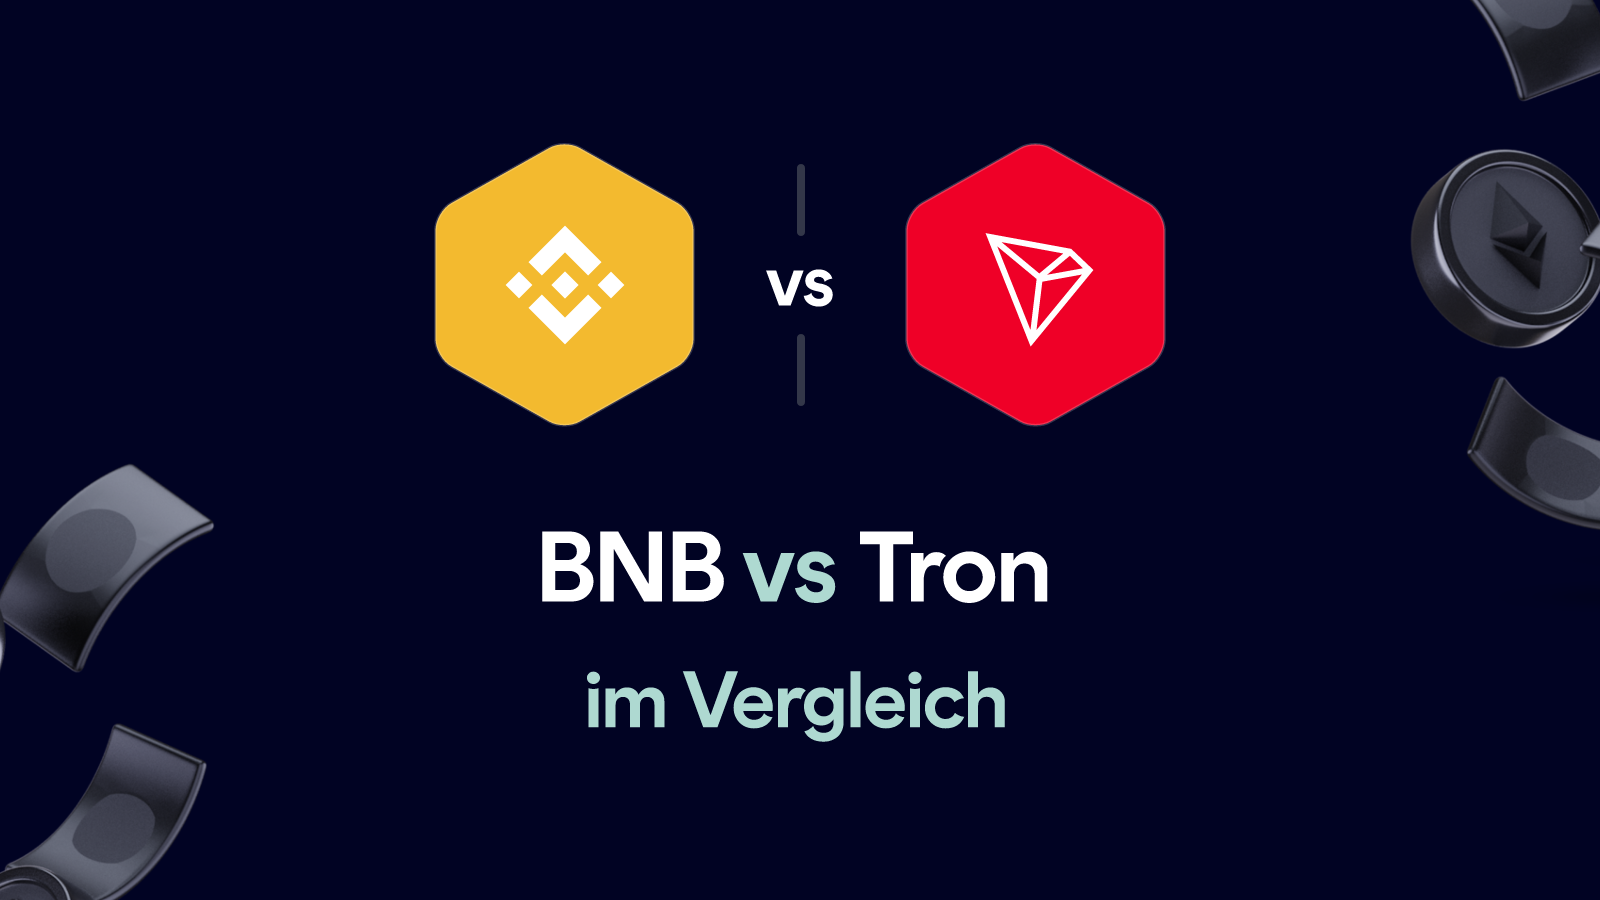 BNB vs Tron